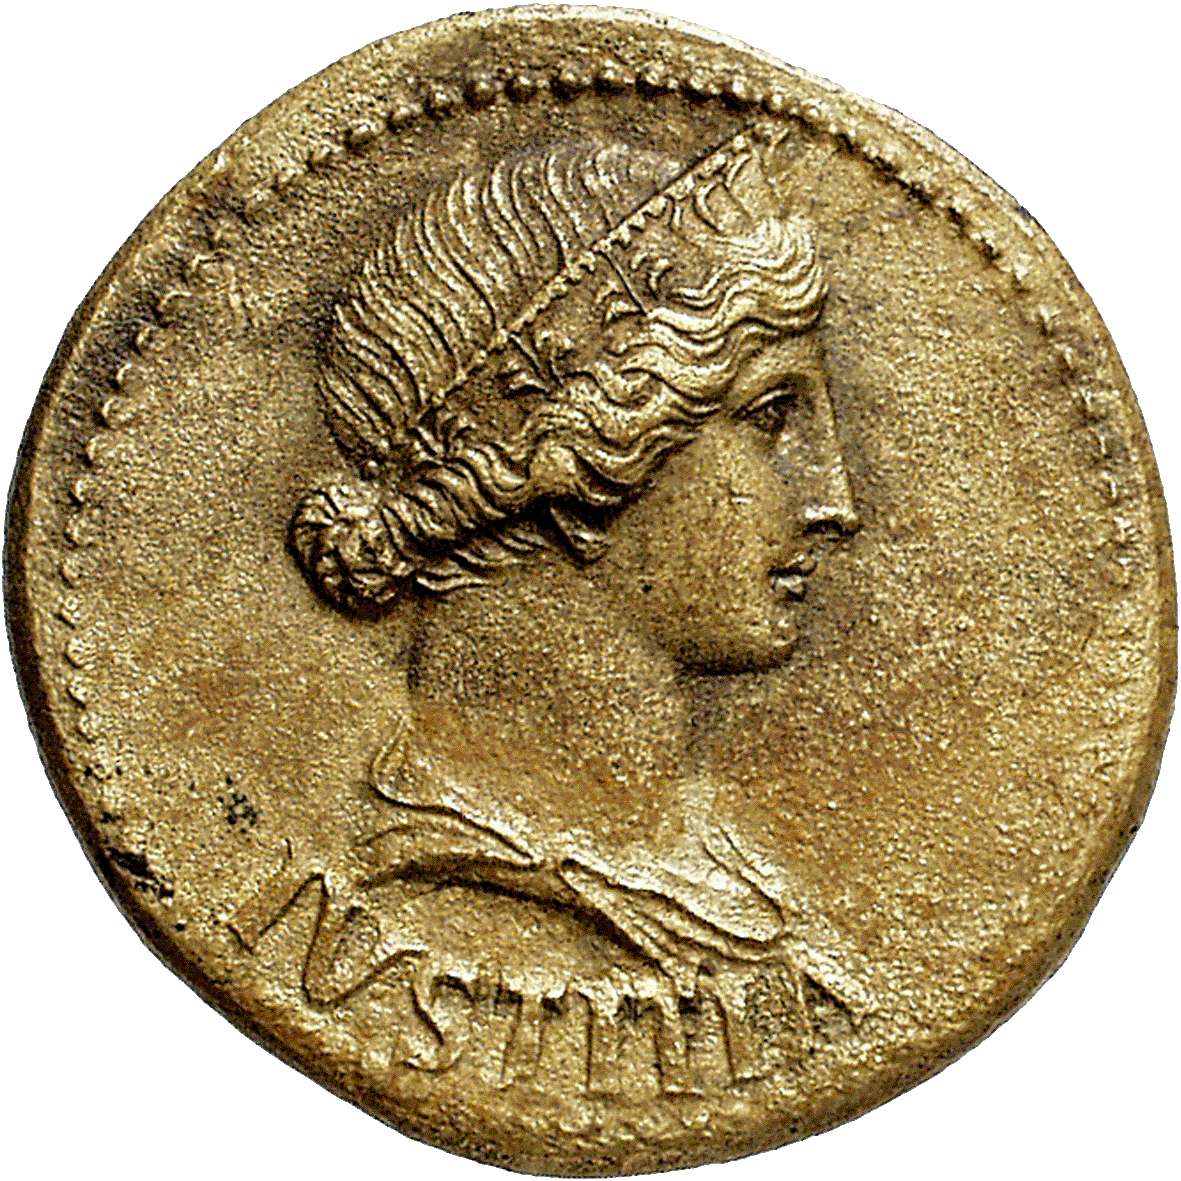 Roman Empire, Tiberius for Livia Drusilla, Dupondius (obverse)